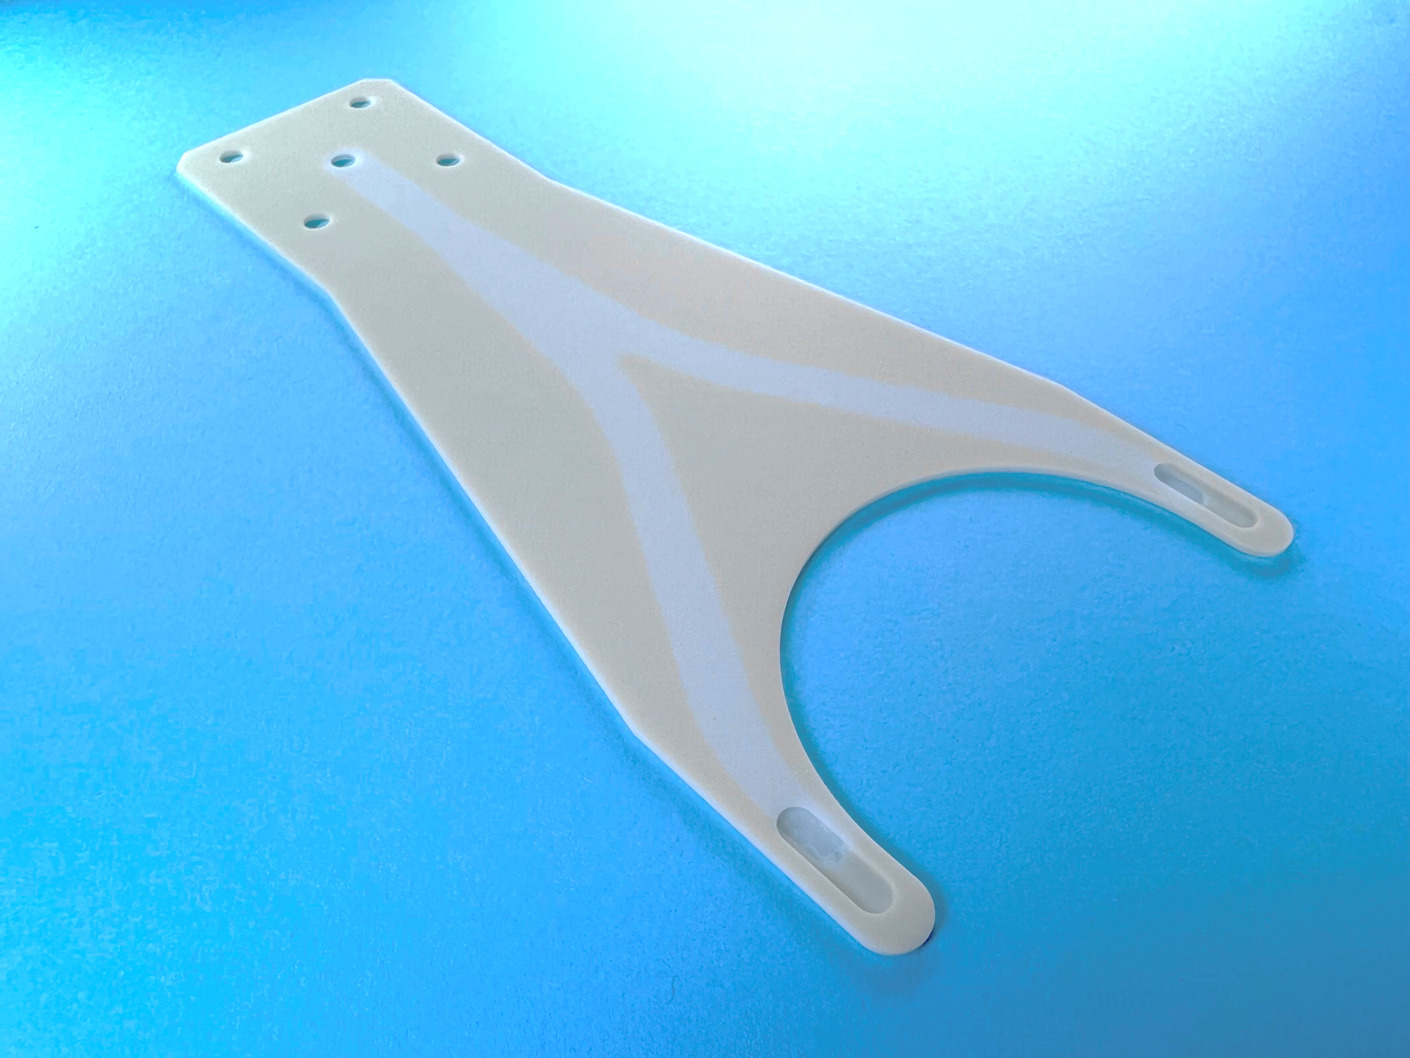 厚さ1 mmの空洞一体型搬送ハンド「UniZac-air 8”（1 ｍｍタイプ）」の技術コラム|Ceramics Design Lab